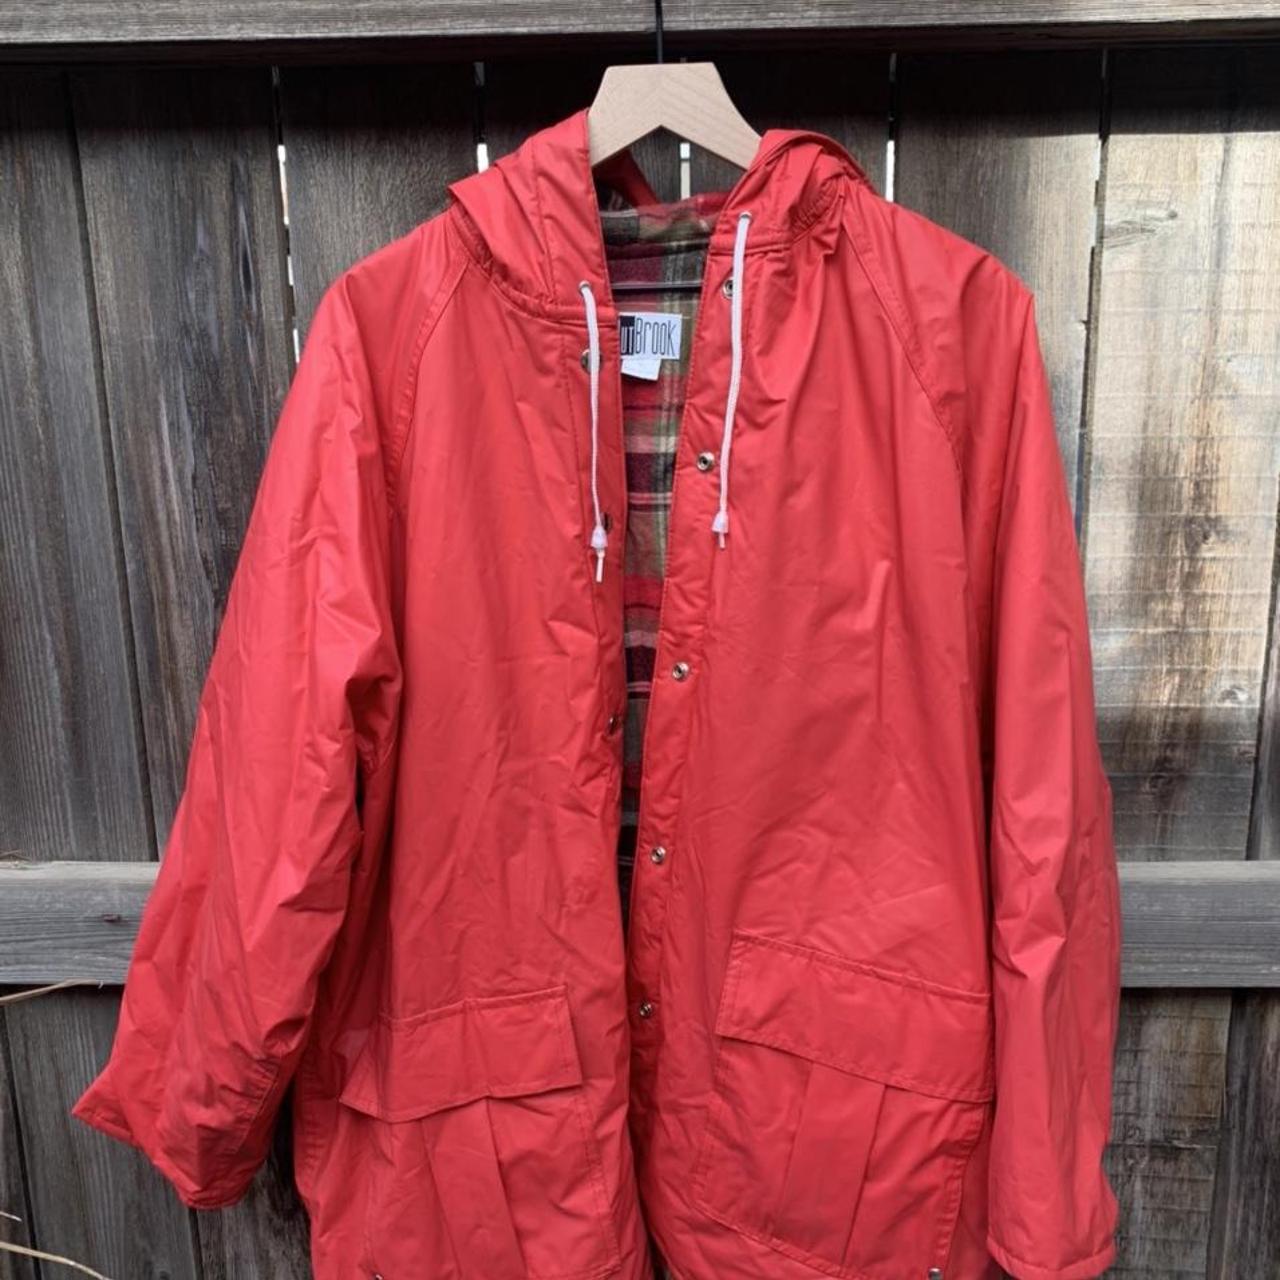 Vintage Outbrook red rain coat! Soooo cute!!!... - Depop